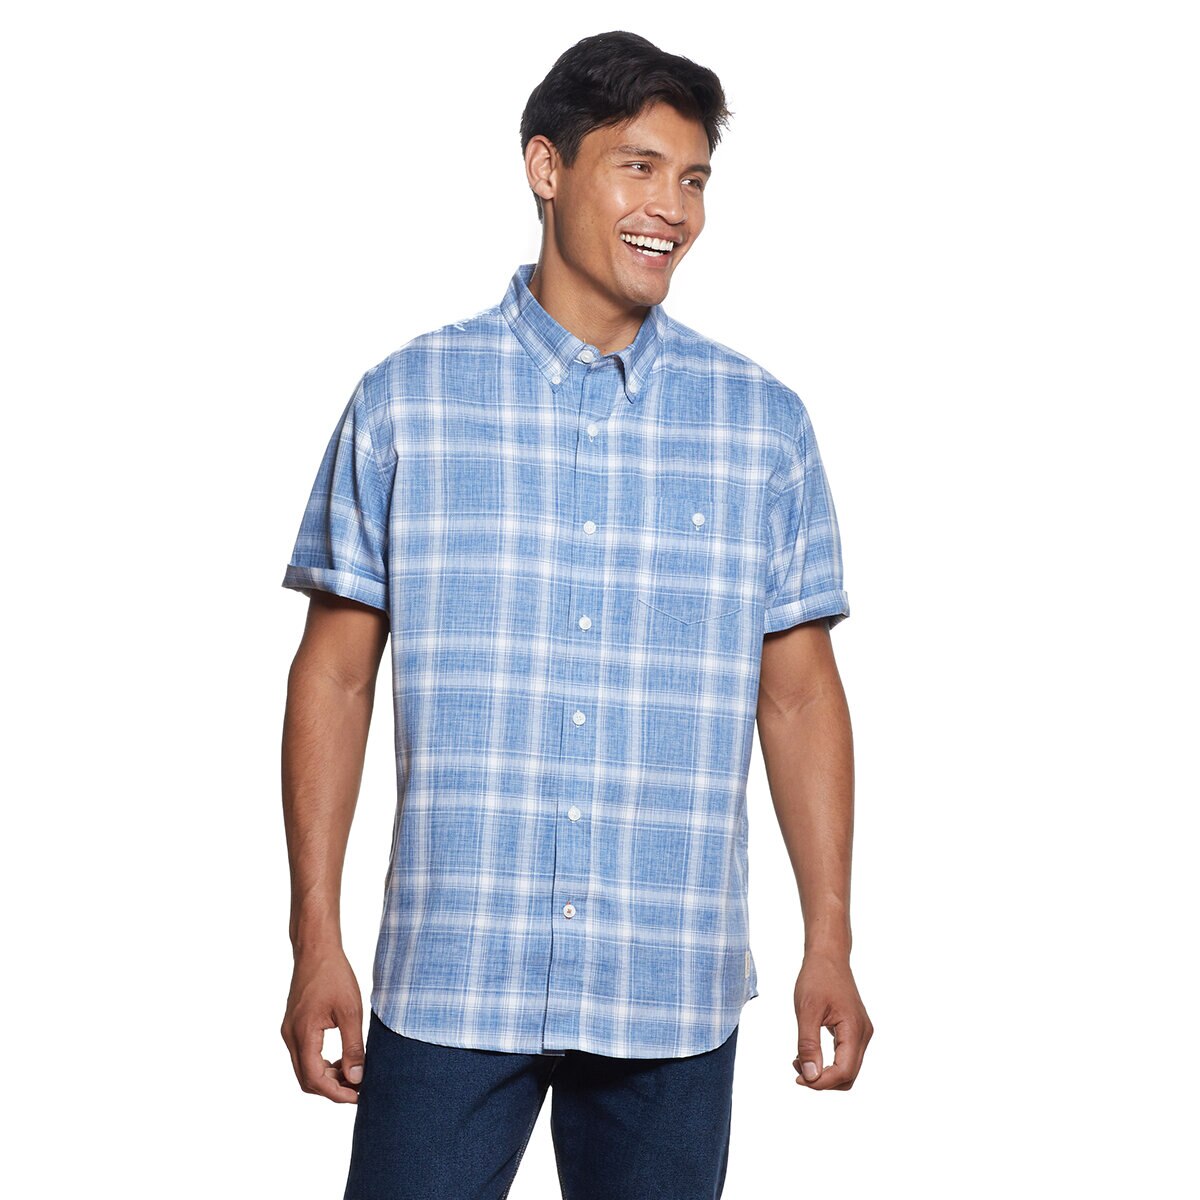 Weatherproof Camisa para Caballero Varias Tallas Azul con Blanco